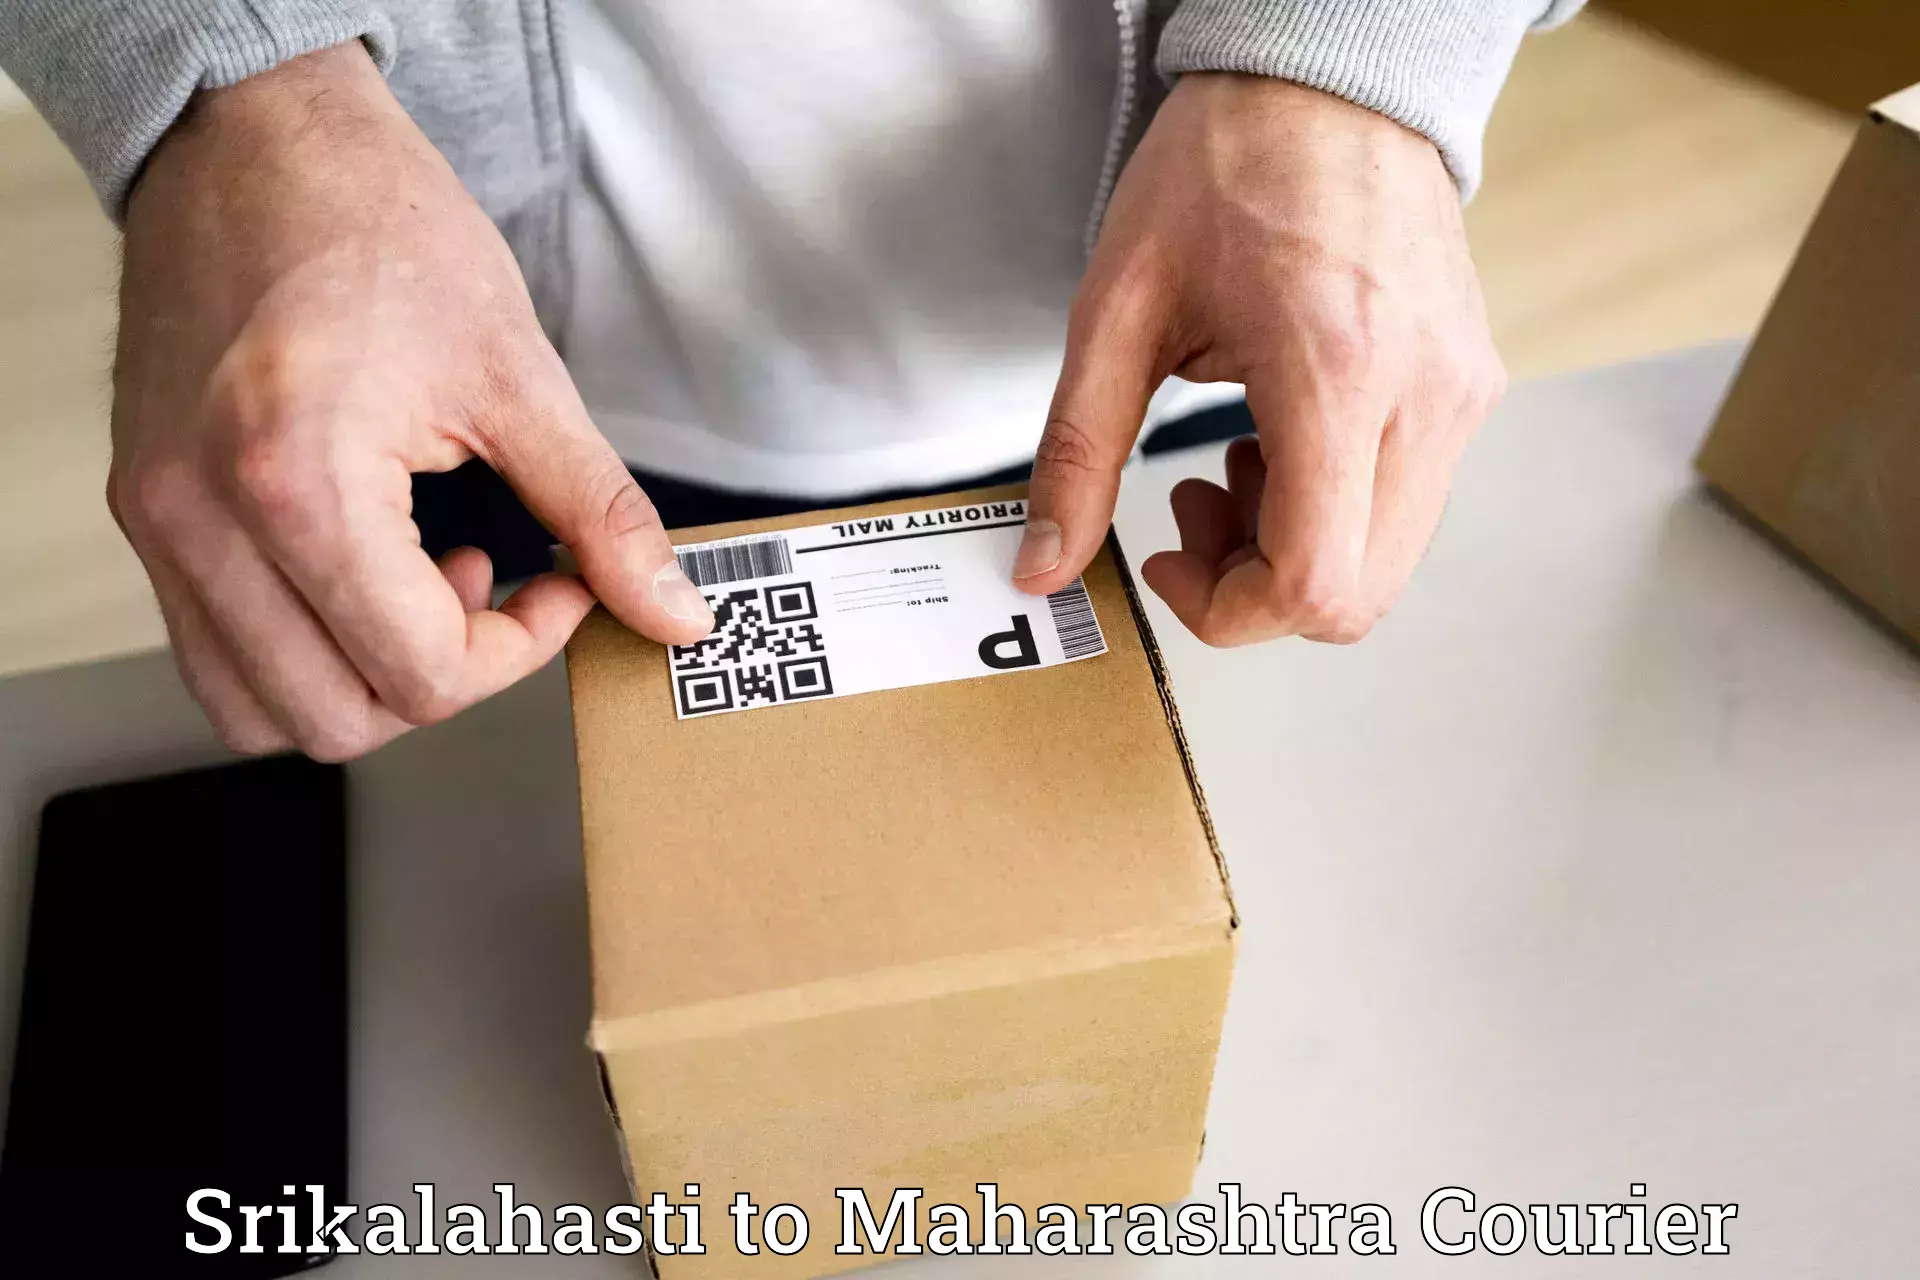 Express delivery capabilities Srikalahasti to Shirur